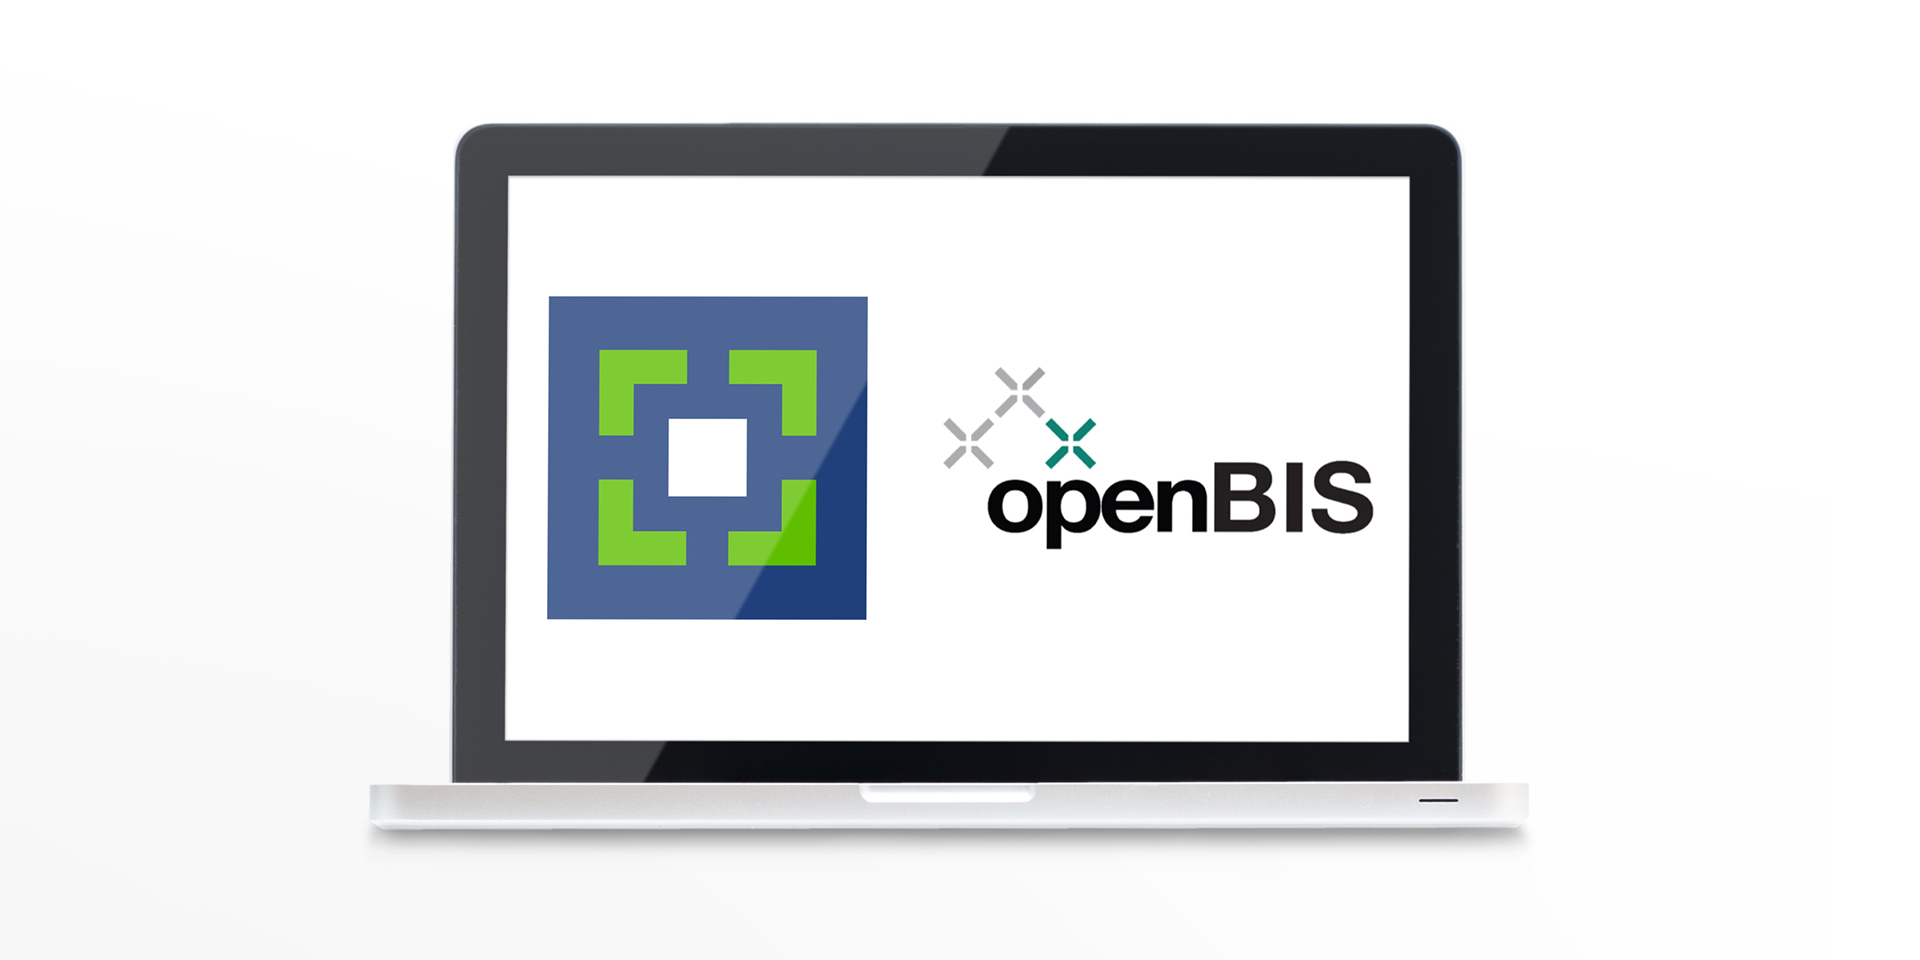 Wer openBIS nutzt, kann Forschungsdaten künftig noch leichter auf der Research Collection publizieren. Dadurch werden wertvolle Daten für andere Forschende schneller zugänglich.